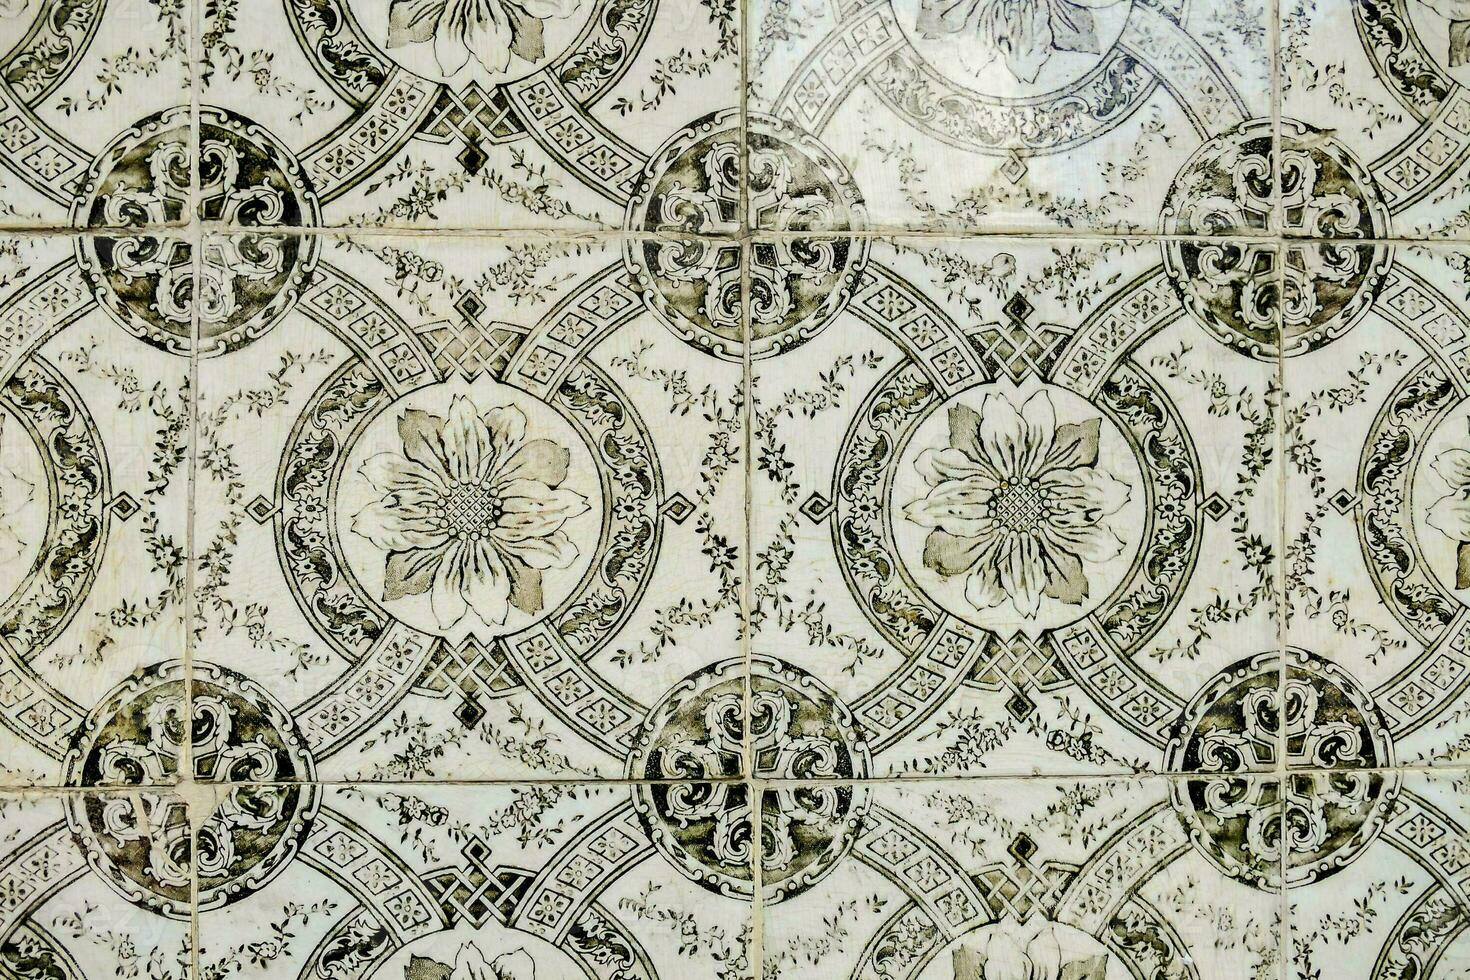 Beautiful tiles close-up photo